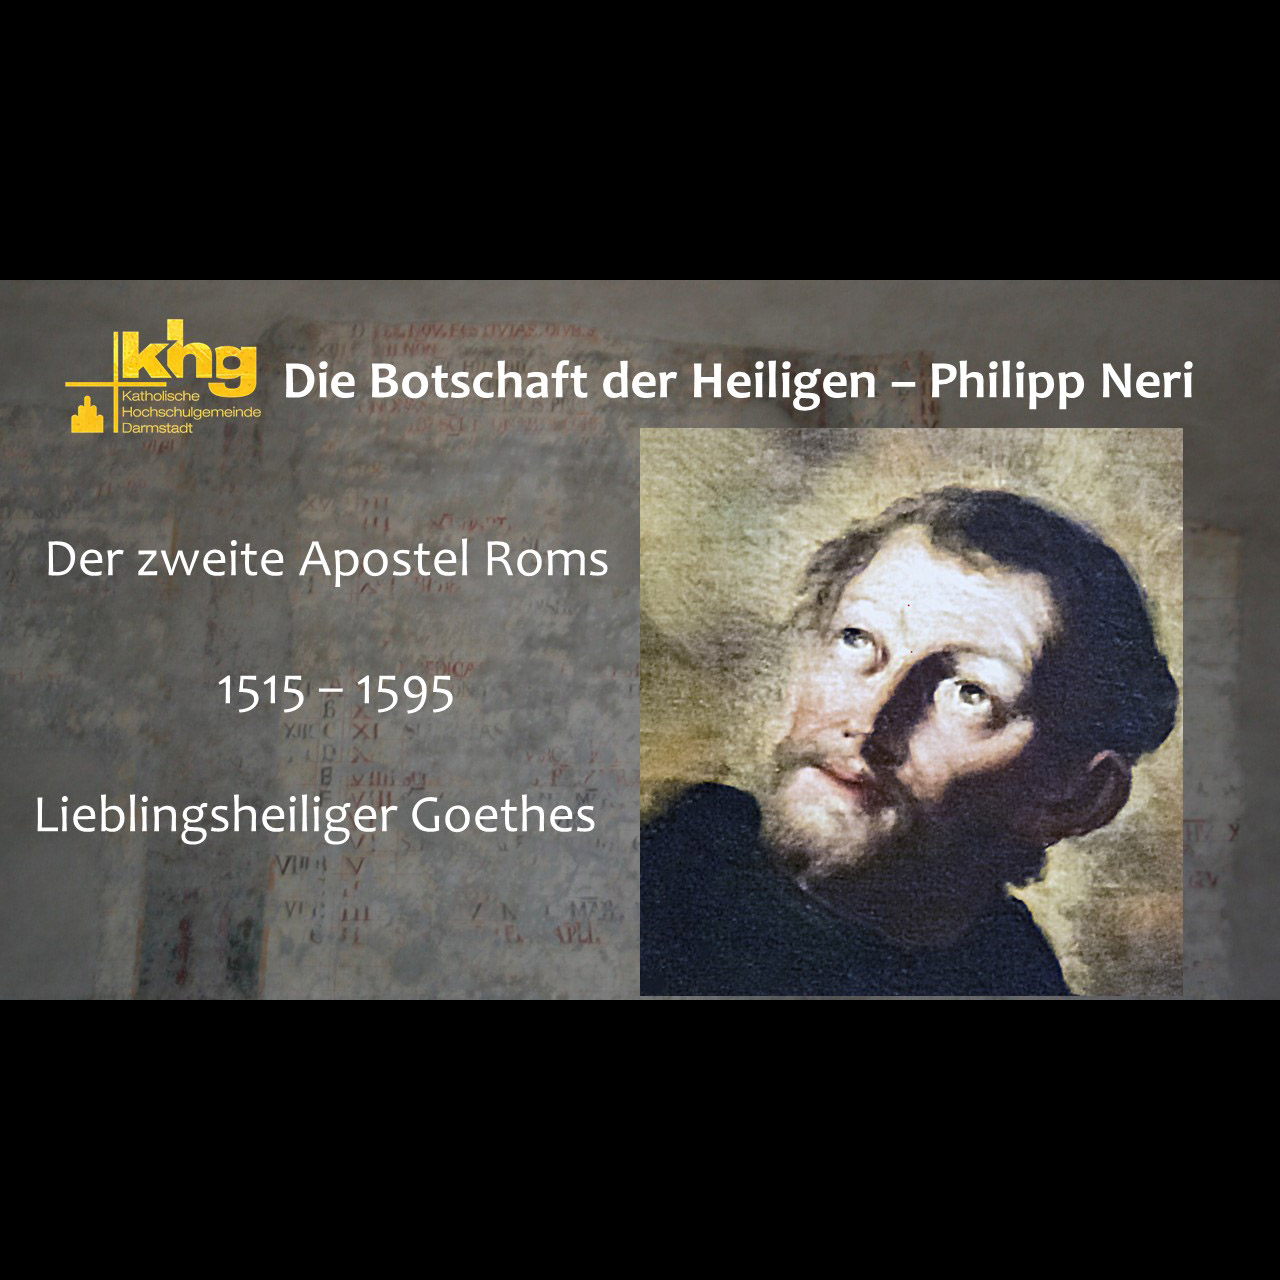 Die Botschaft der Heiligen - Philipp Neri (c) KHG Darmstadt